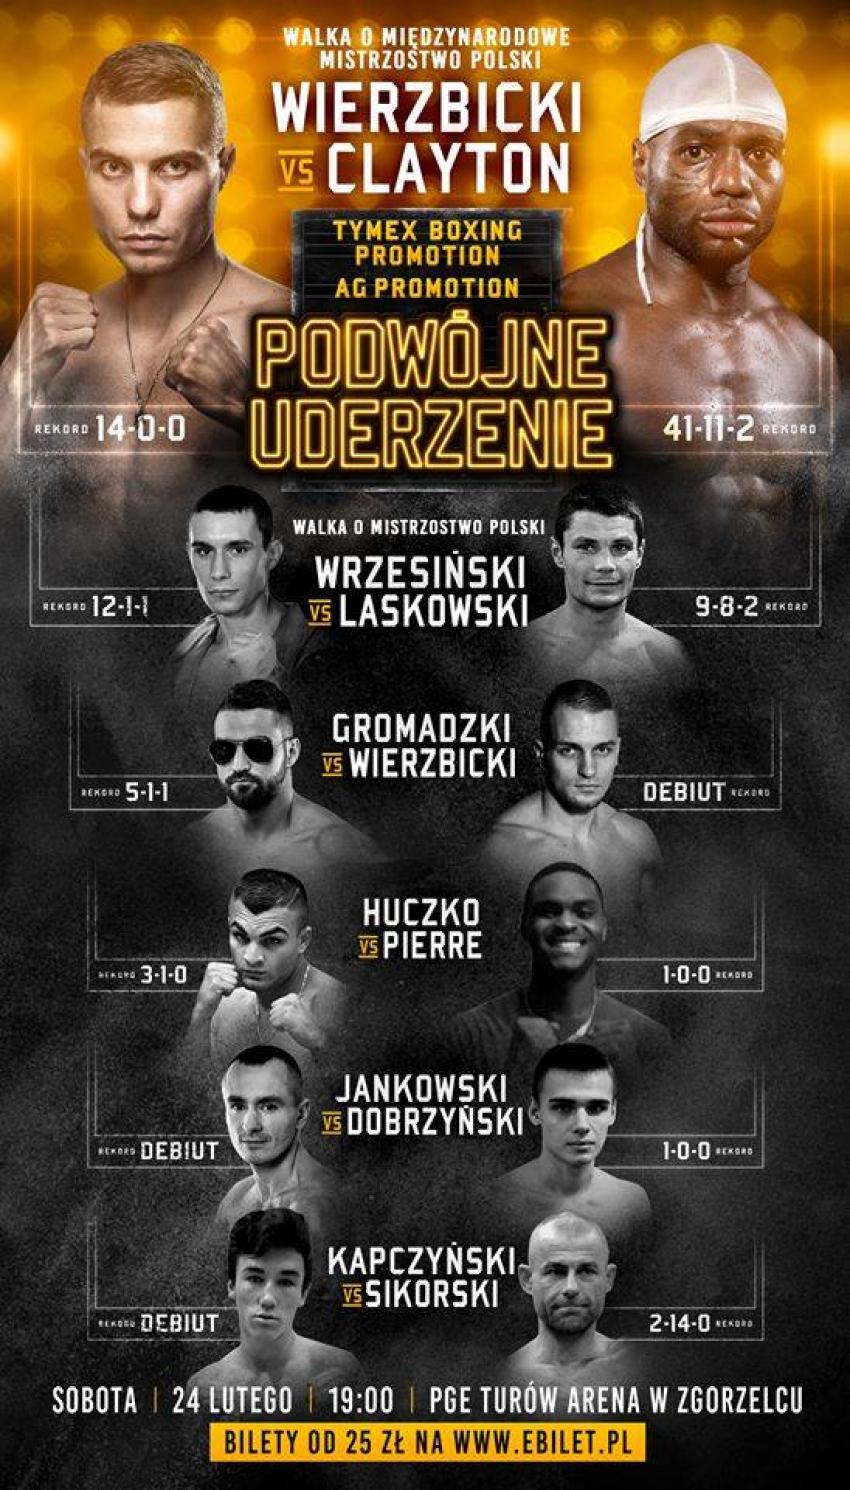 24 lutego w Zgorzelcu odbędzie się Gala Boksu Zawodowego "Podwójne uderzenie". | materiały prasowe Tymex Boxing Promotion